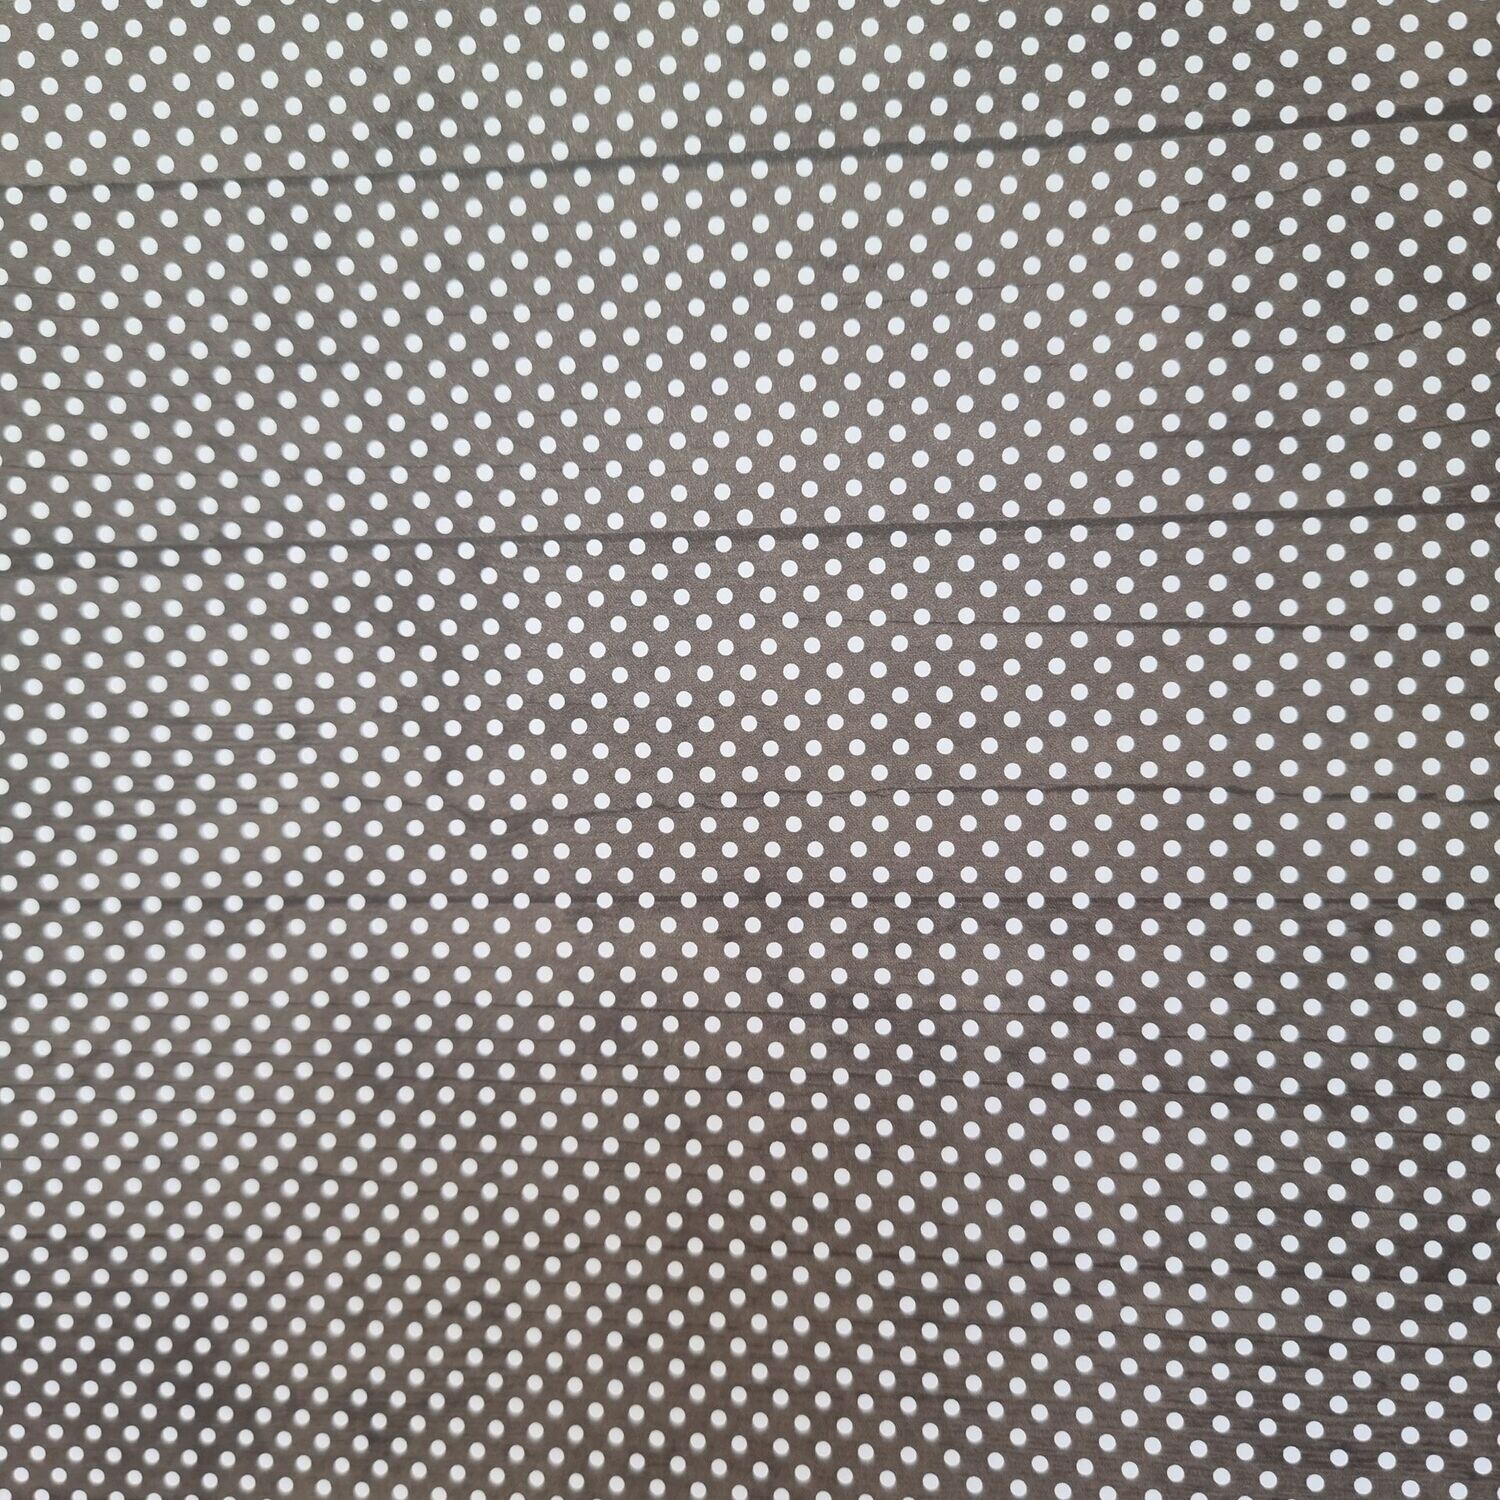 Mini Dots graubraun mit weißen Punkten